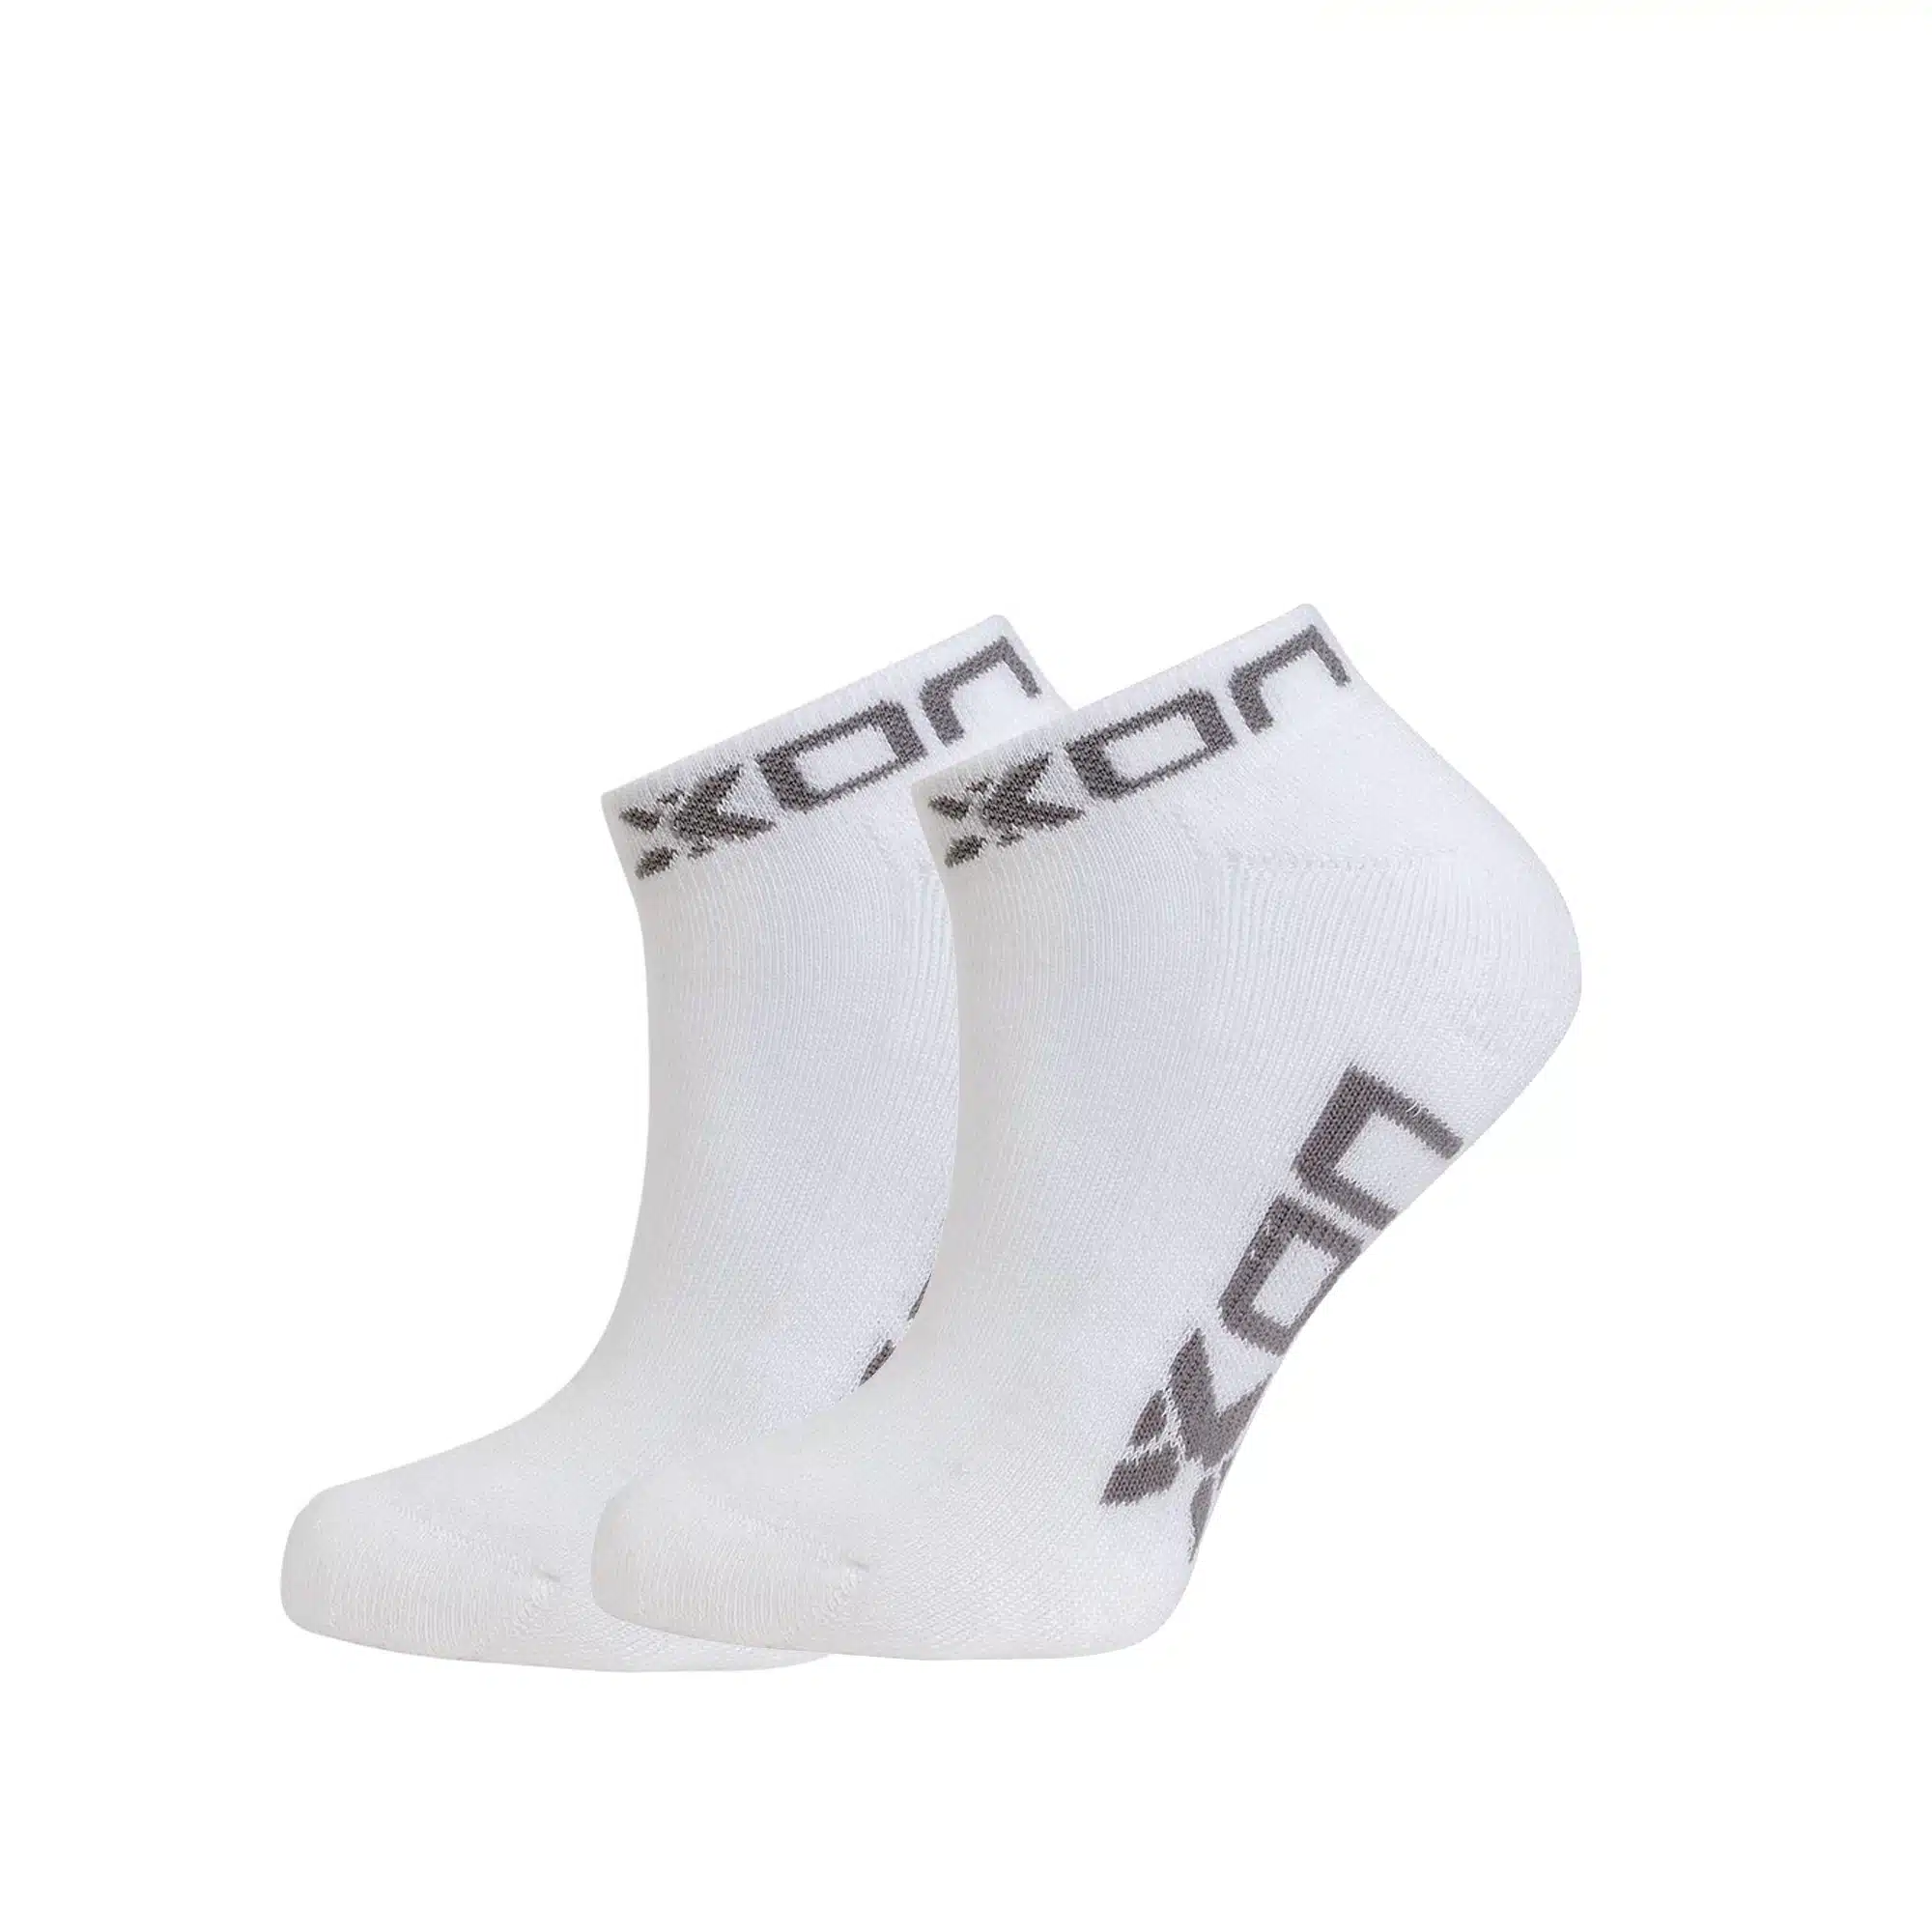 NOX Socks Ankle Length White